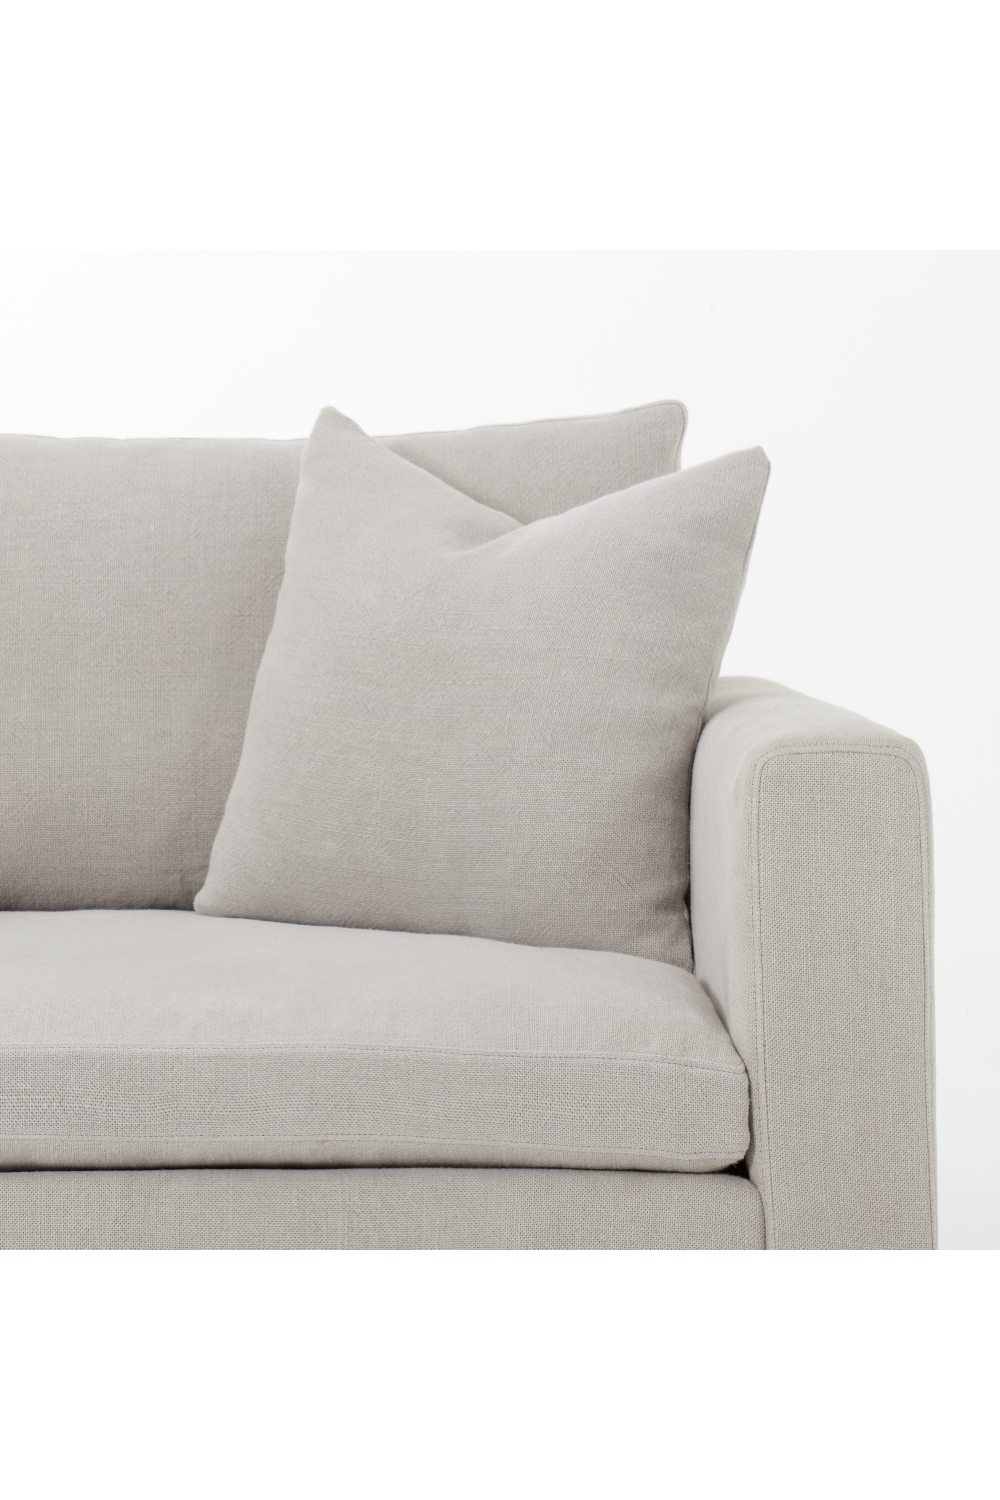 Gray Upholstered Modern Armchair | Andrew Martin Lauren | Oroa.com